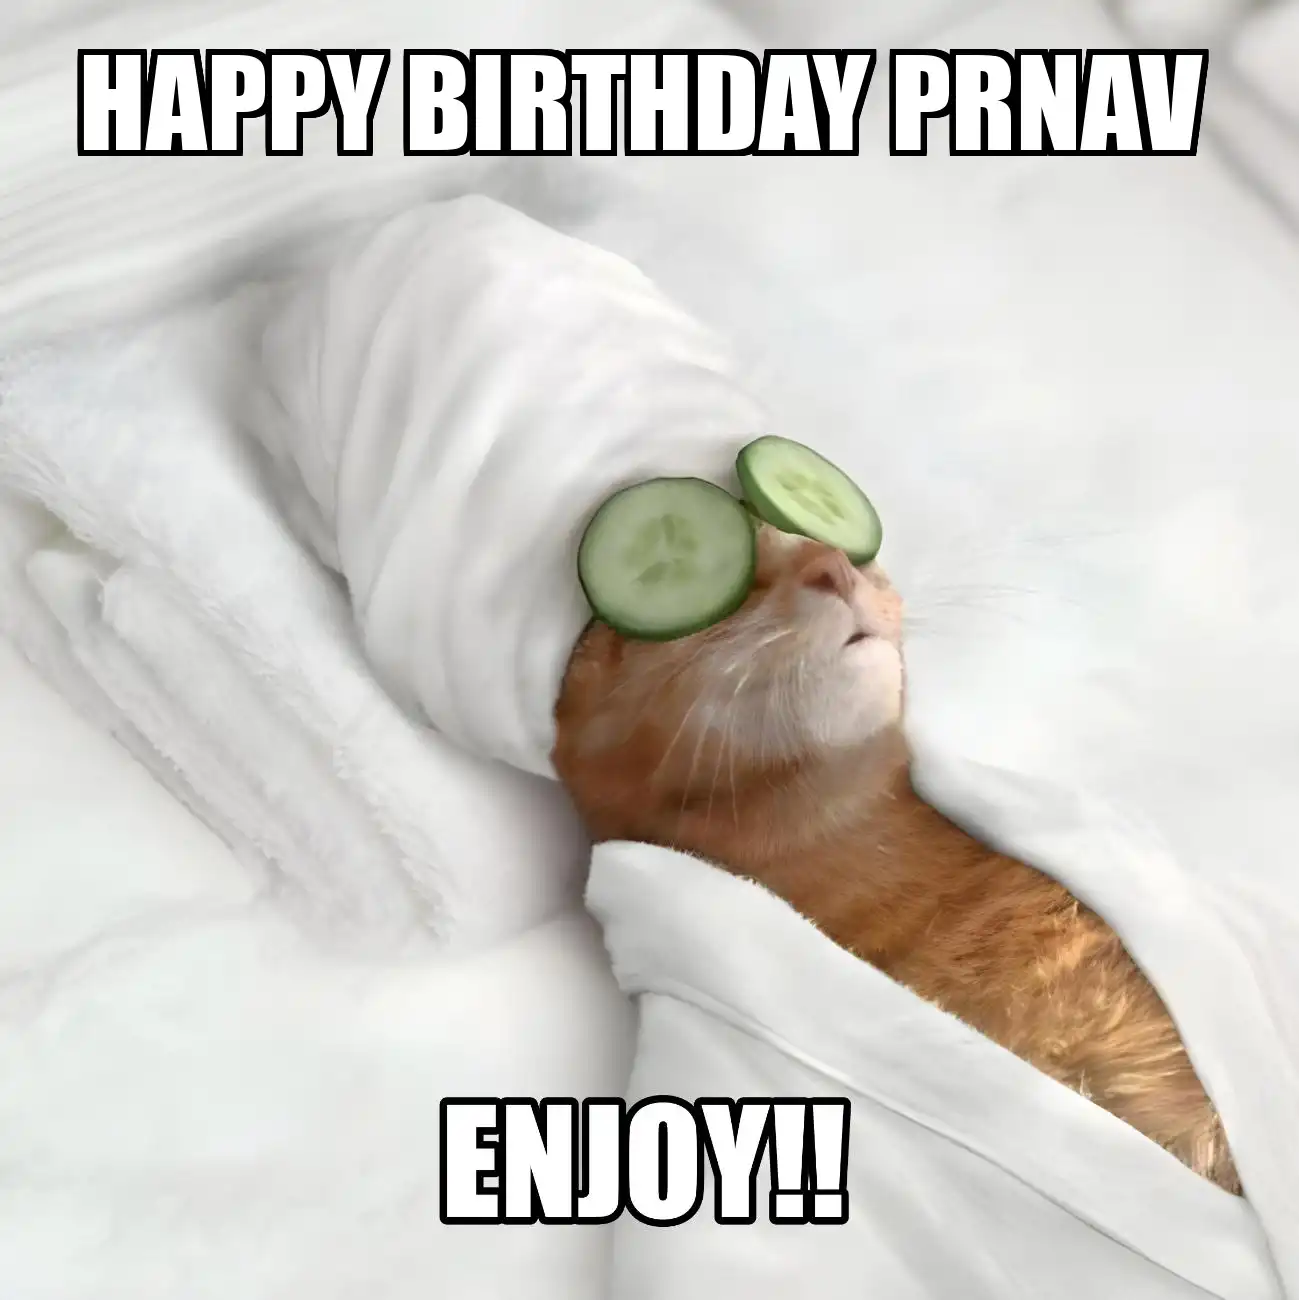 Happy Birthday Prnav Enjoy Cat Meme